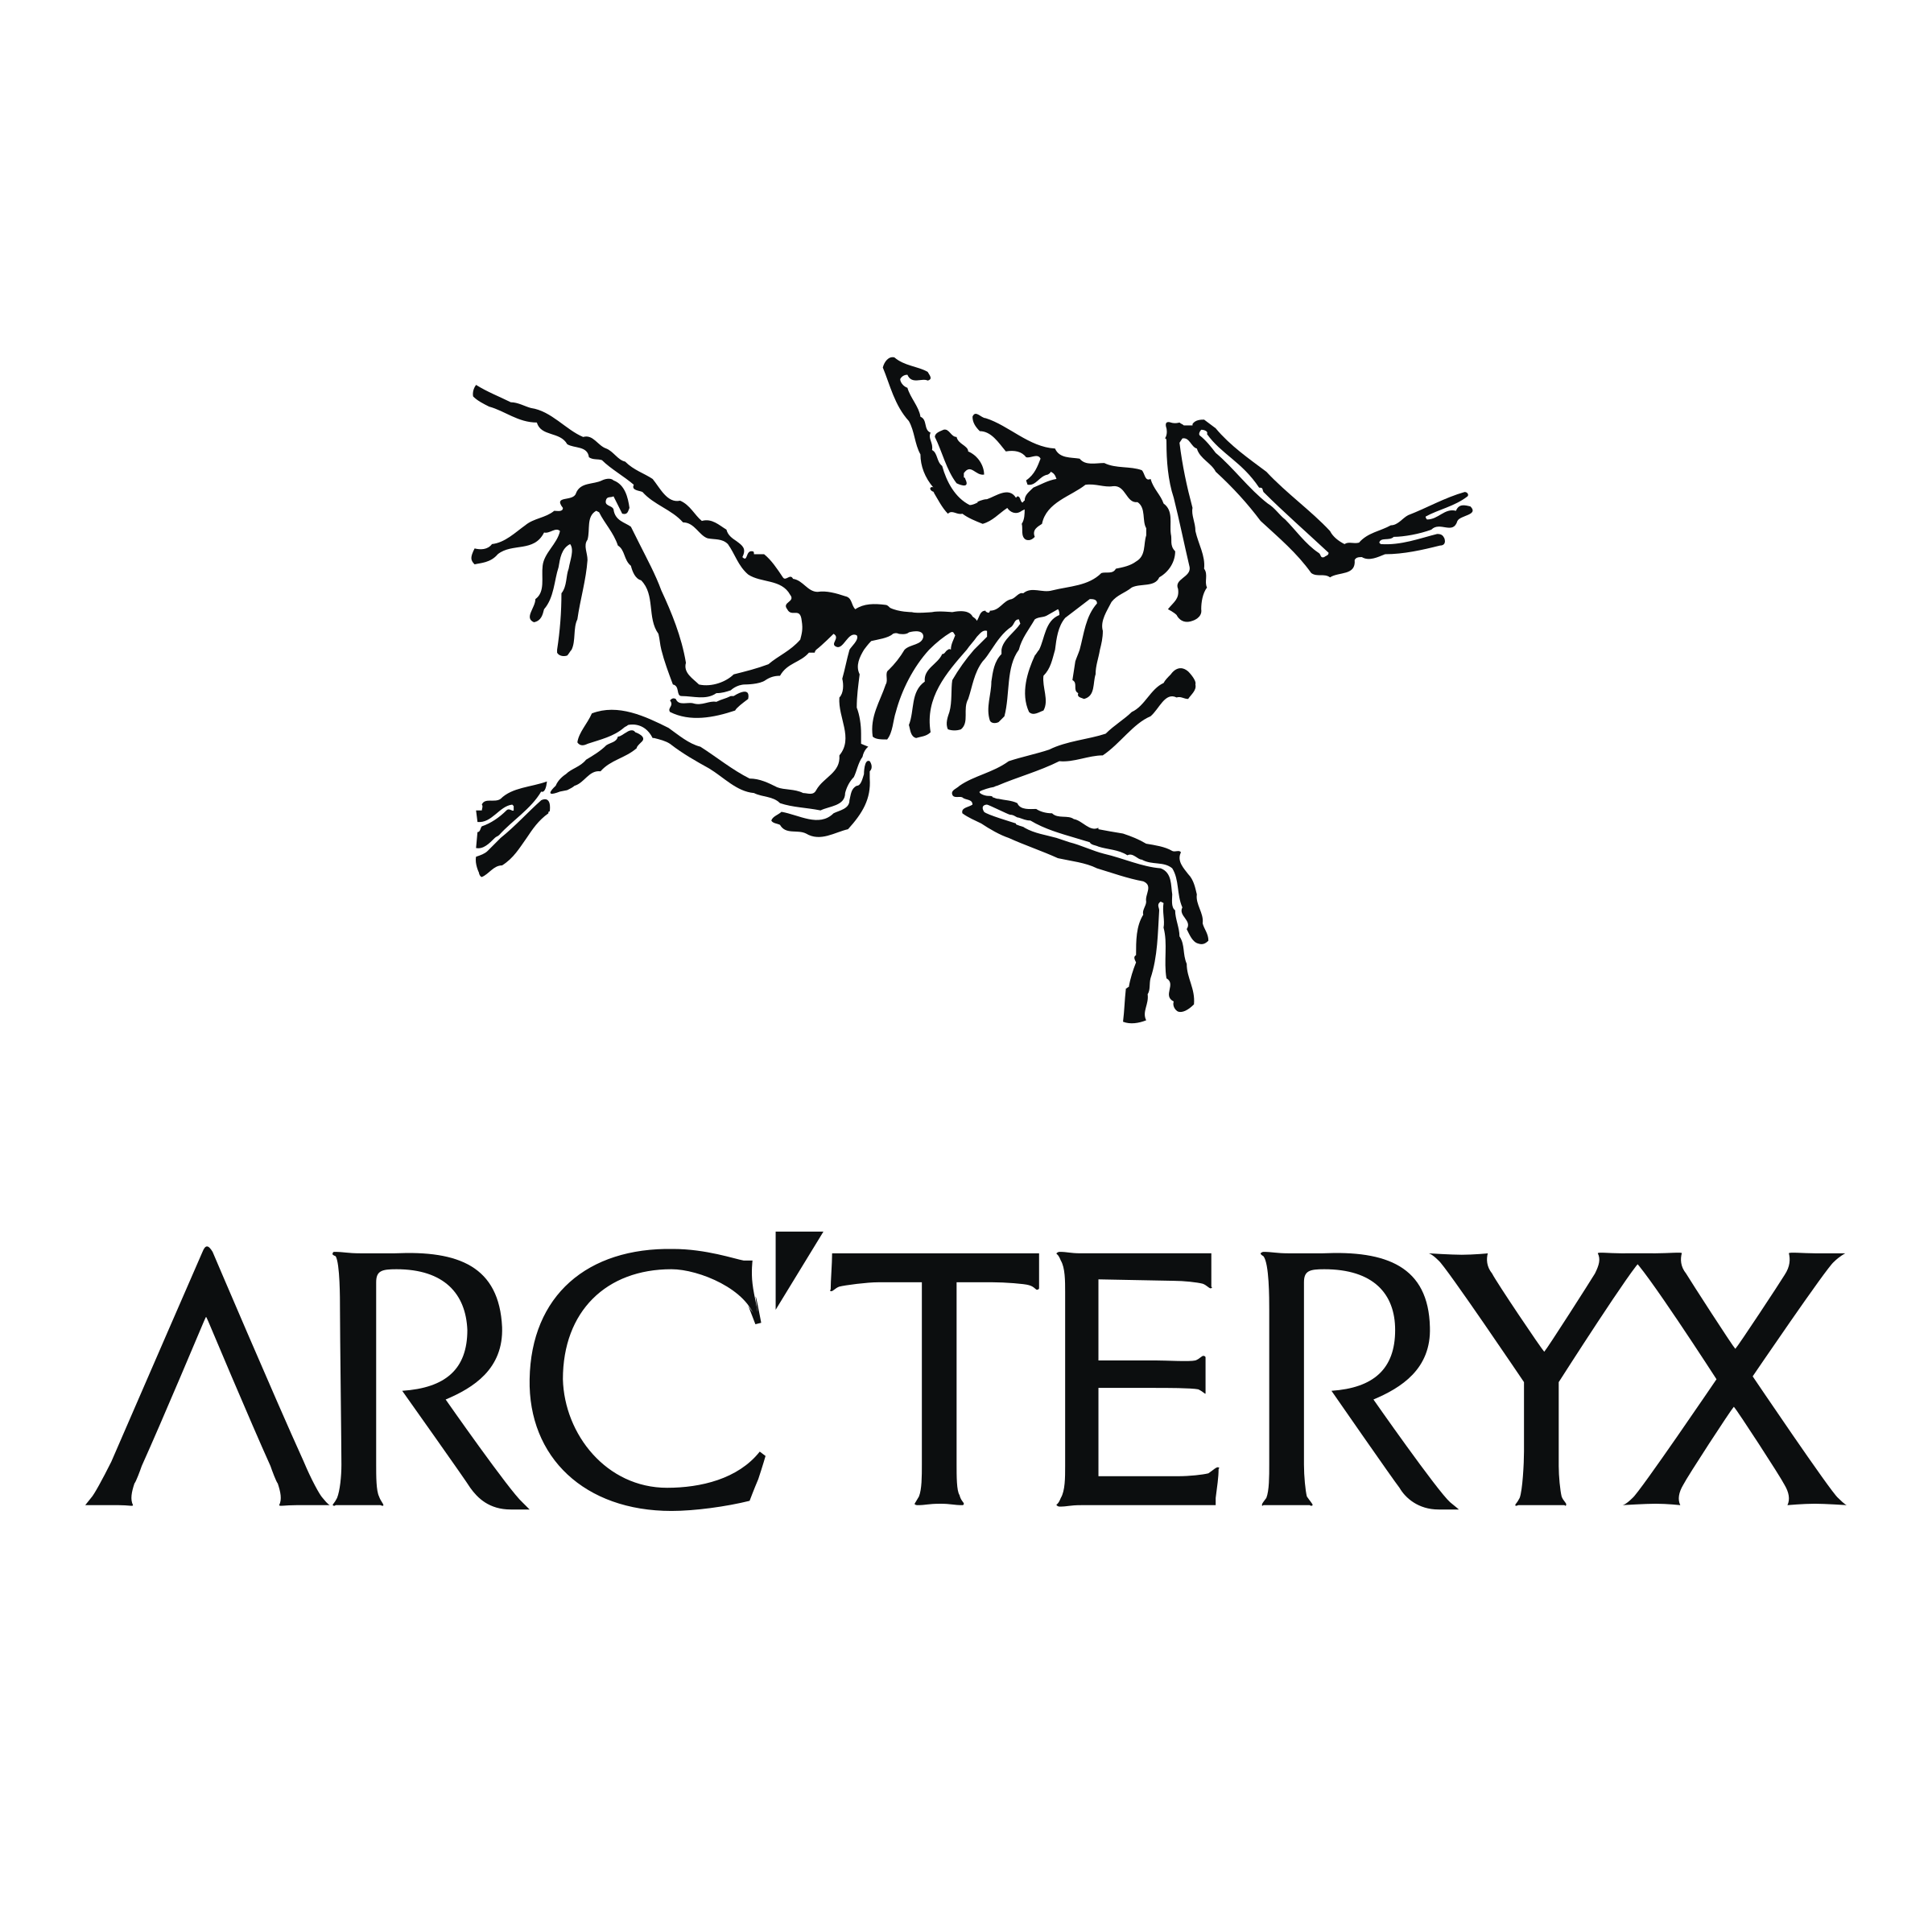 arc-teryx-logo-png-transparent